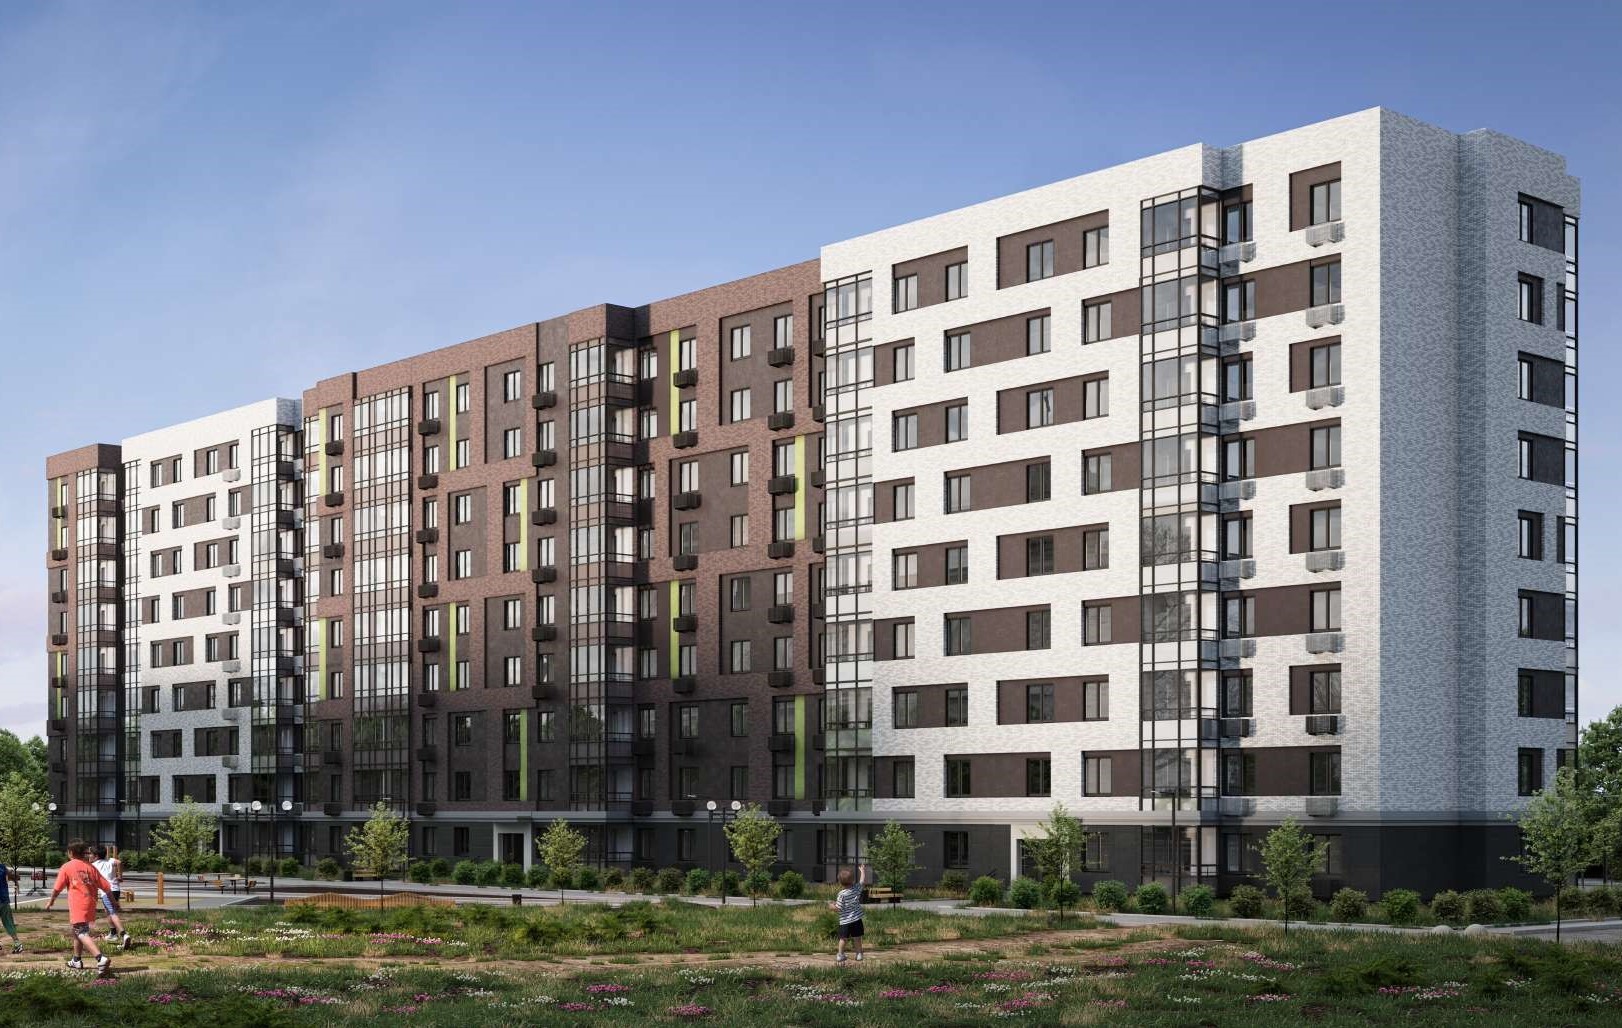 Мособлархитектура согласовала облик нового жилого дома под переселение в Сергиевом Посаде